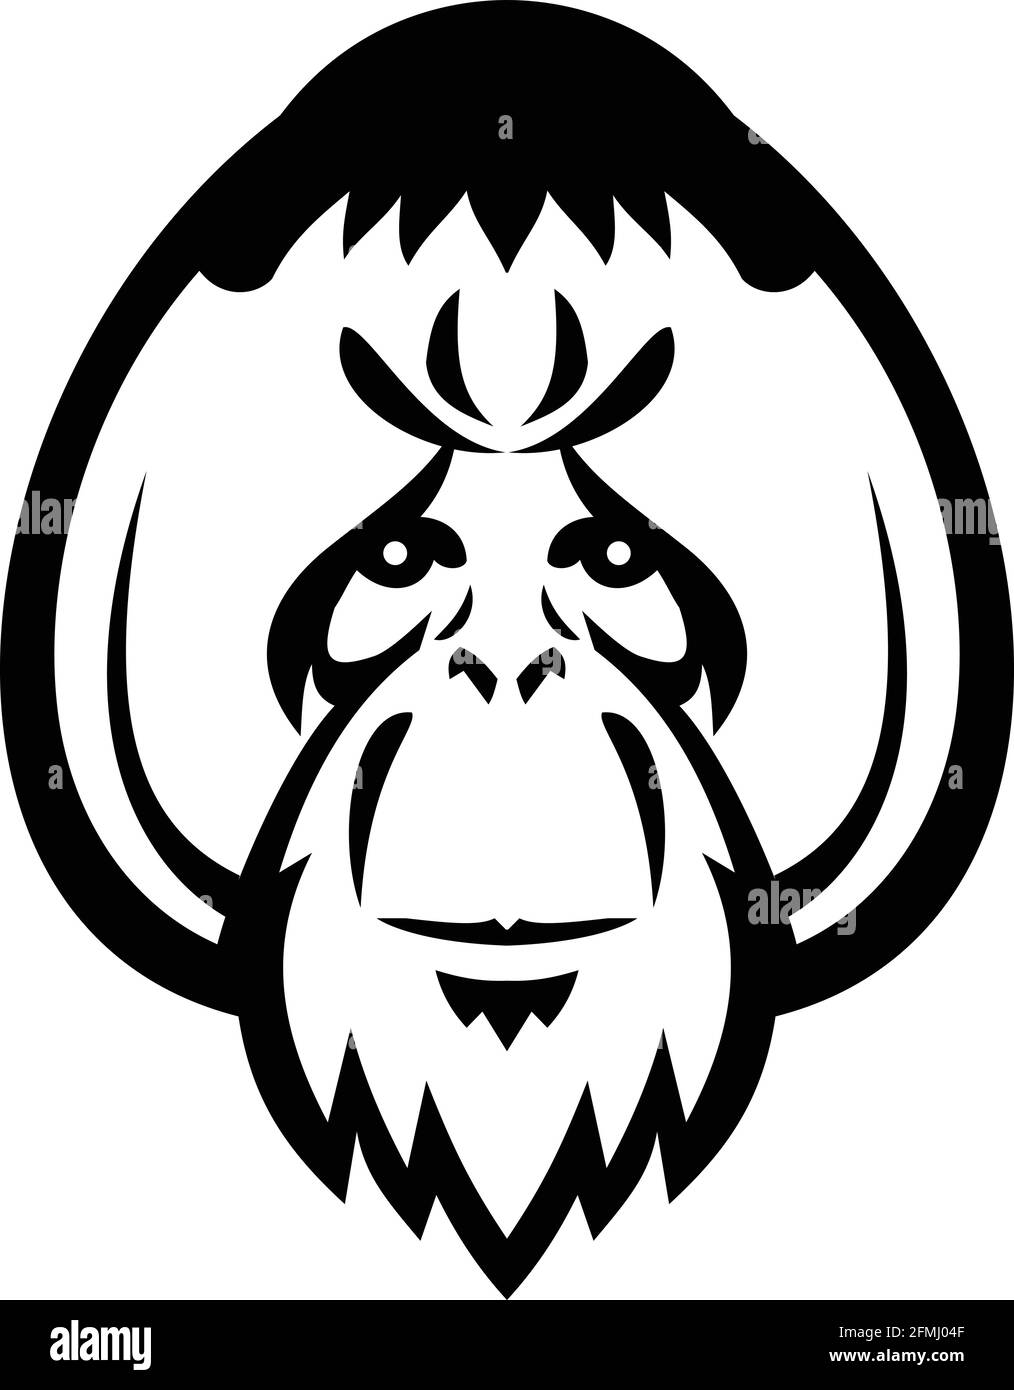 Maskottchen Abbildung des Kopfes eines erwachsenen männlichen Orang-Utans, eines großen Affen, der in den Regenwäldern Indonesiens und Malaysias beheimatet ist, mit markanten Wangenpolster oder Fla Stock Vektor